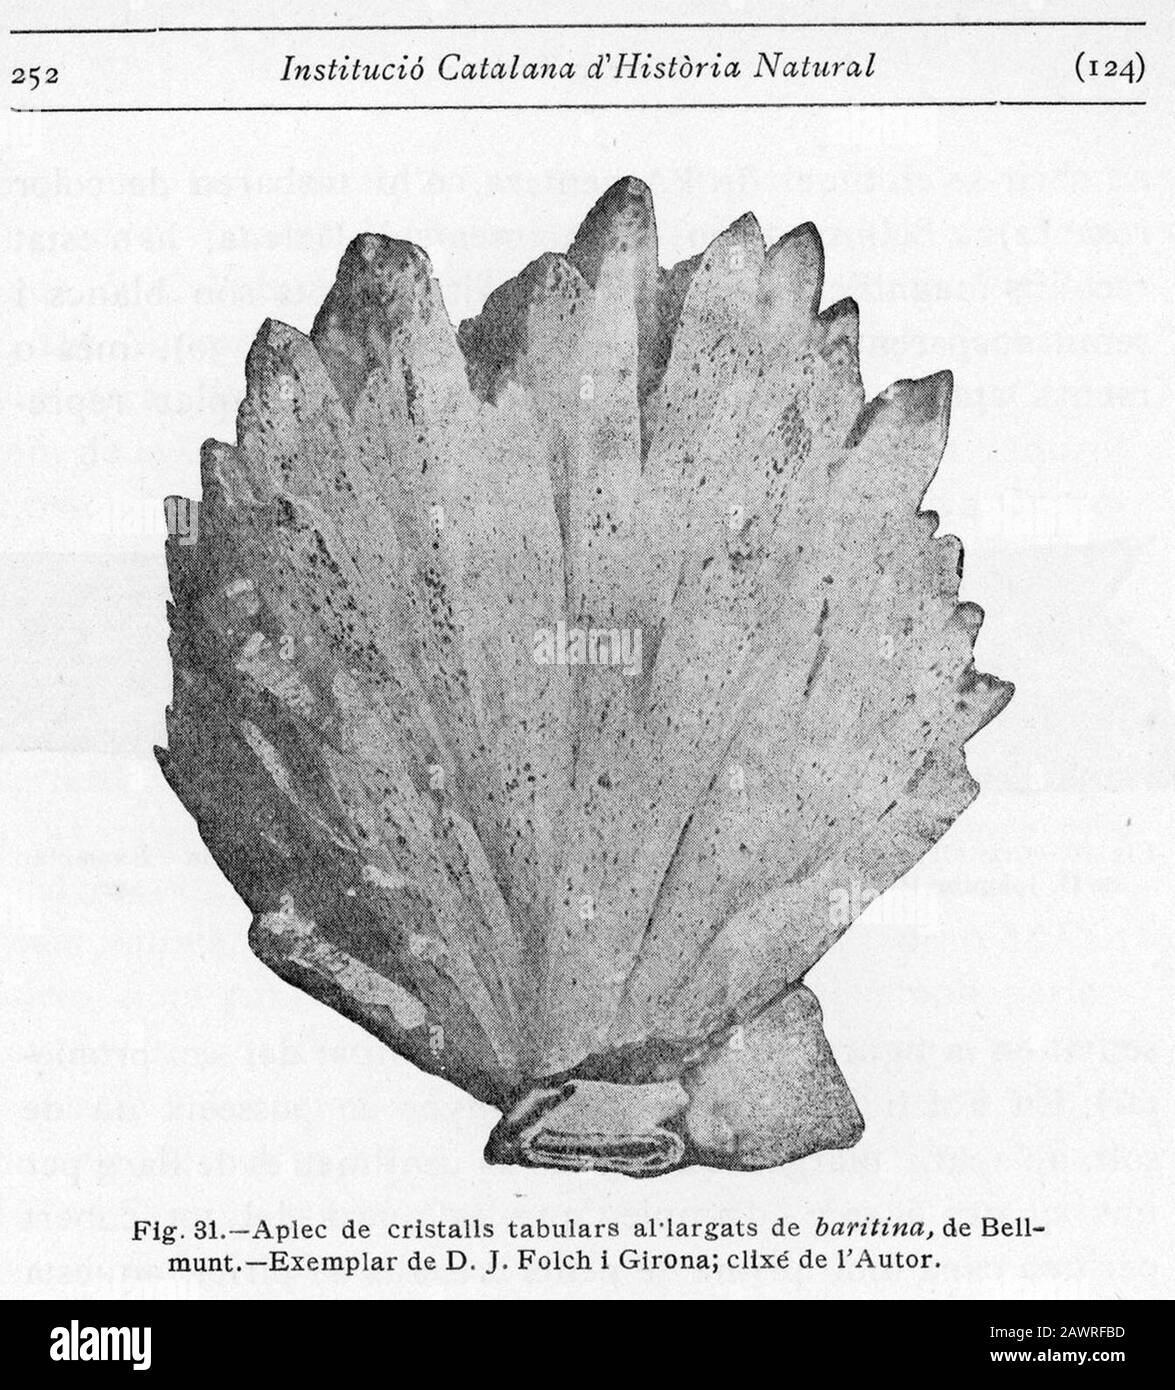 fotografía de un ejemplar de baritina de la colección Folch, publicada en Els Minerals de Catalunya en 1920. Stockfoto